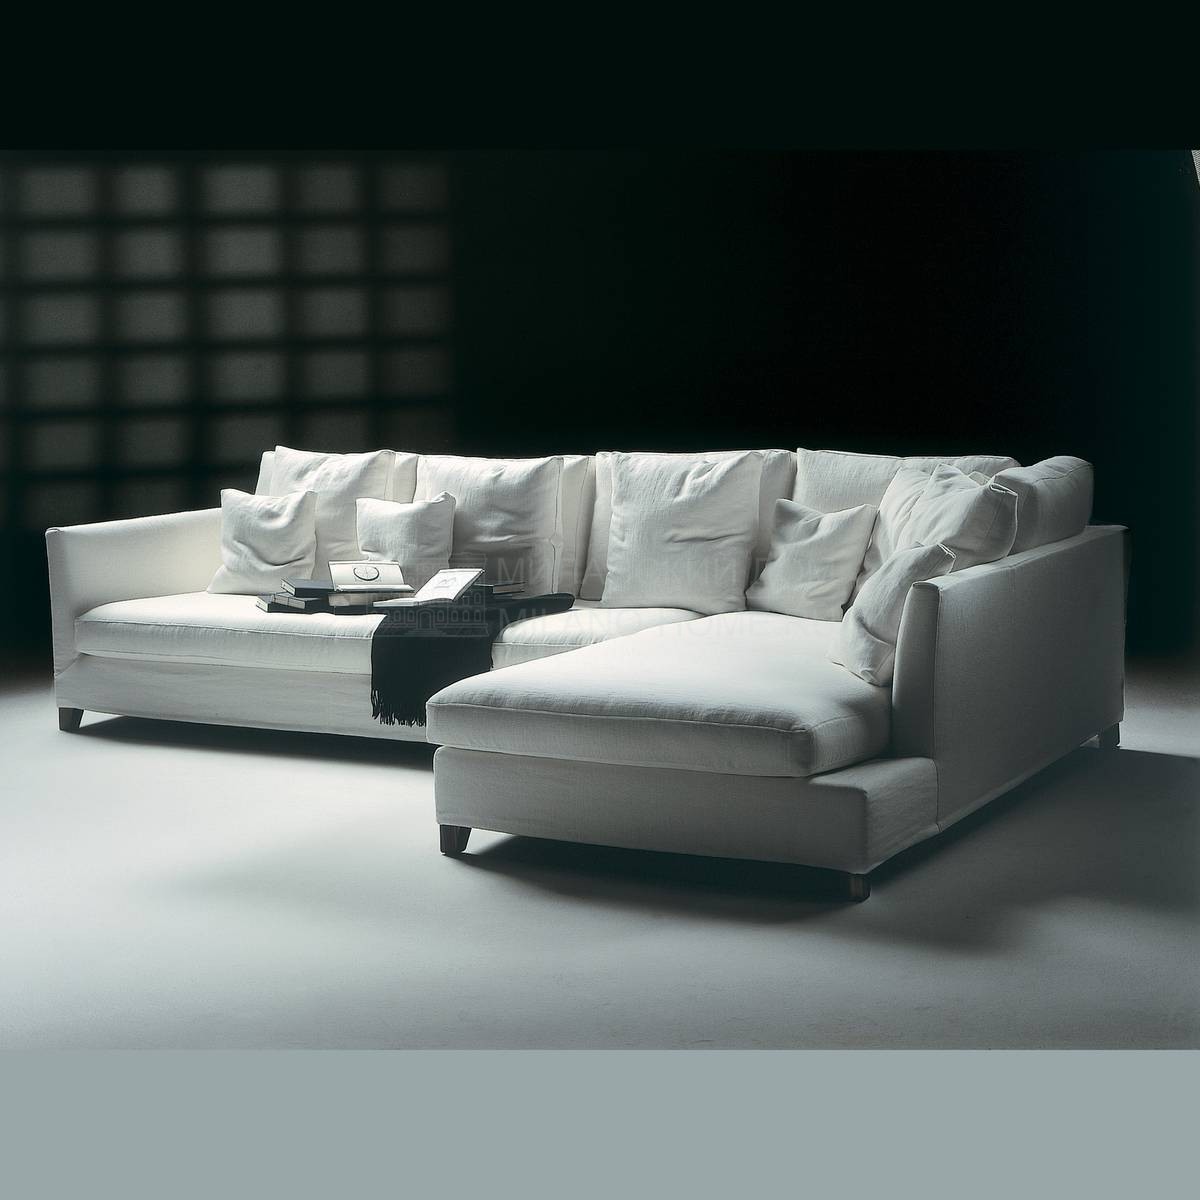 Модульный диван Victor large /sofa из Италии фабрики FLEXFORM